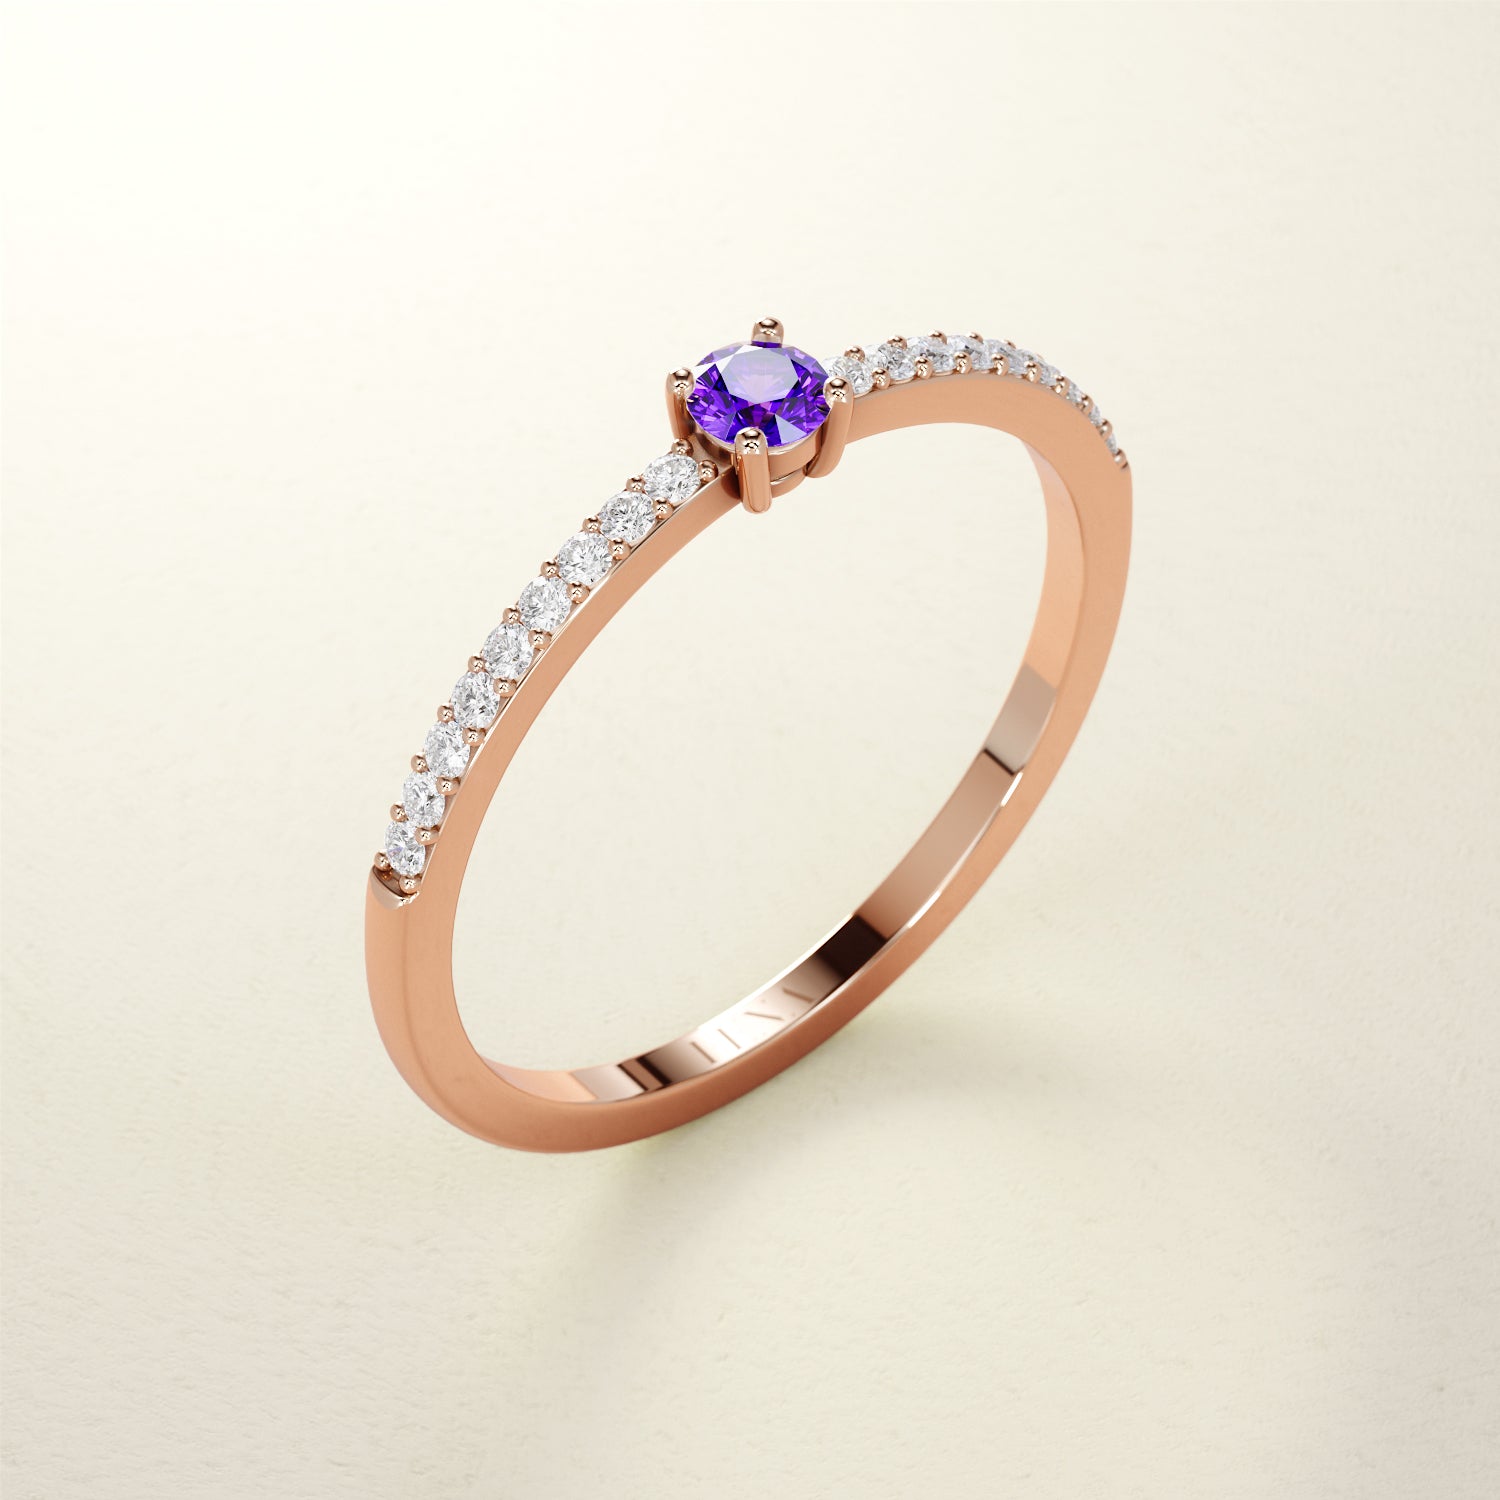 Birthstone Ring Februar in Roségold mit Amethyst und Diamanten. Von FENA daily Jewellery.